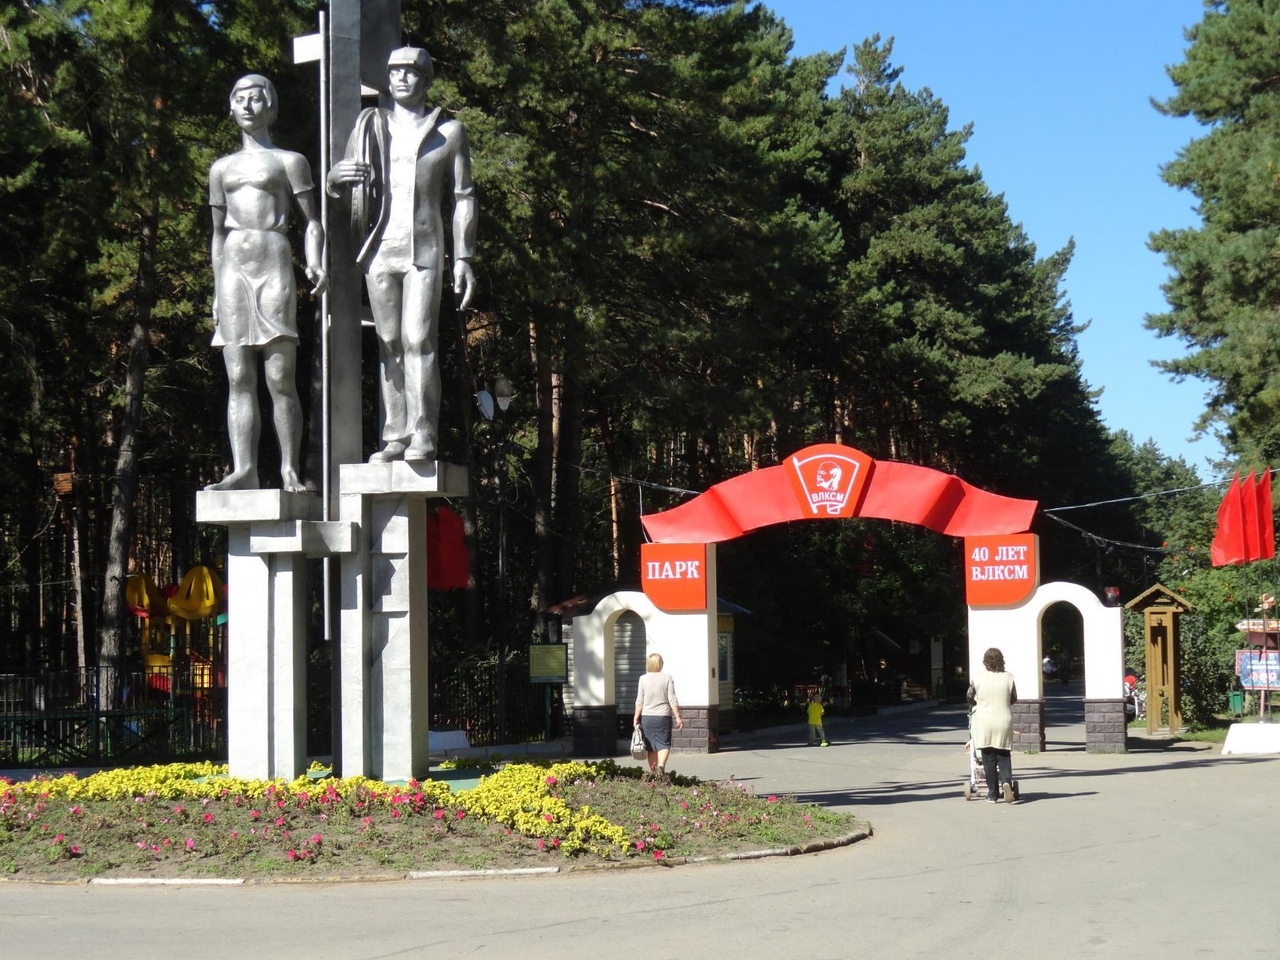 40 лет влксм парк ульяновск фото